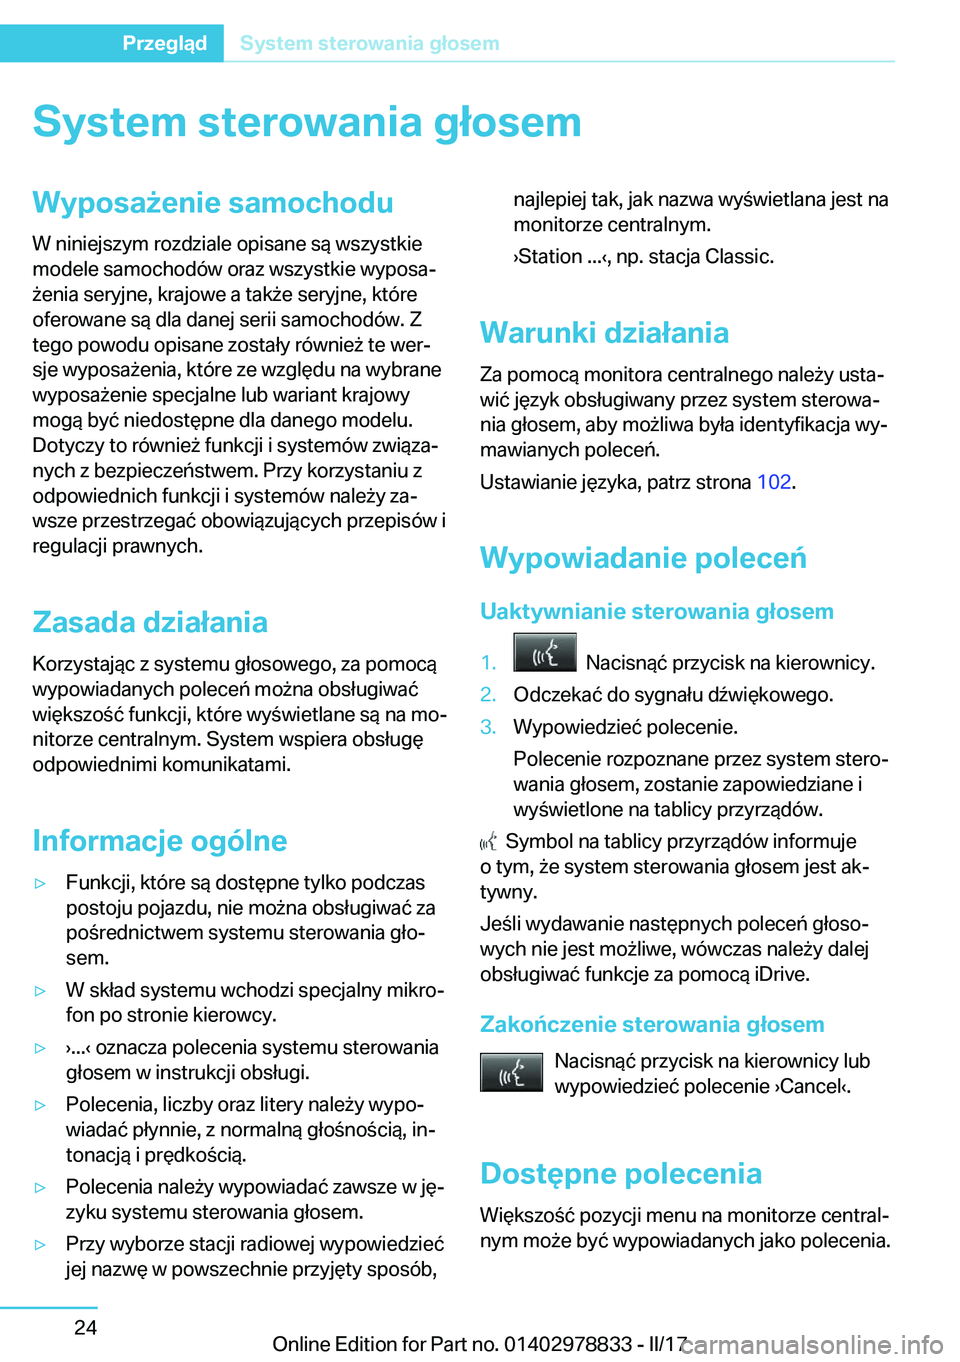 BMW I3 2017  Instrukcja obsługi (in Polish) �S�y�s�t�e�m��s�t�e�r�o�w�a�n�i�a��g�ł�o�s�e�m�W�y�p�o�s�a9�e�n�i�e��s�a�m�o�c�h�o�d�u
�W� �n�i�n�i�e�j�s�z�y�m� �r�o�z�d�z�i�a�l�e� �o�p�i�s�a�n�e� �s�